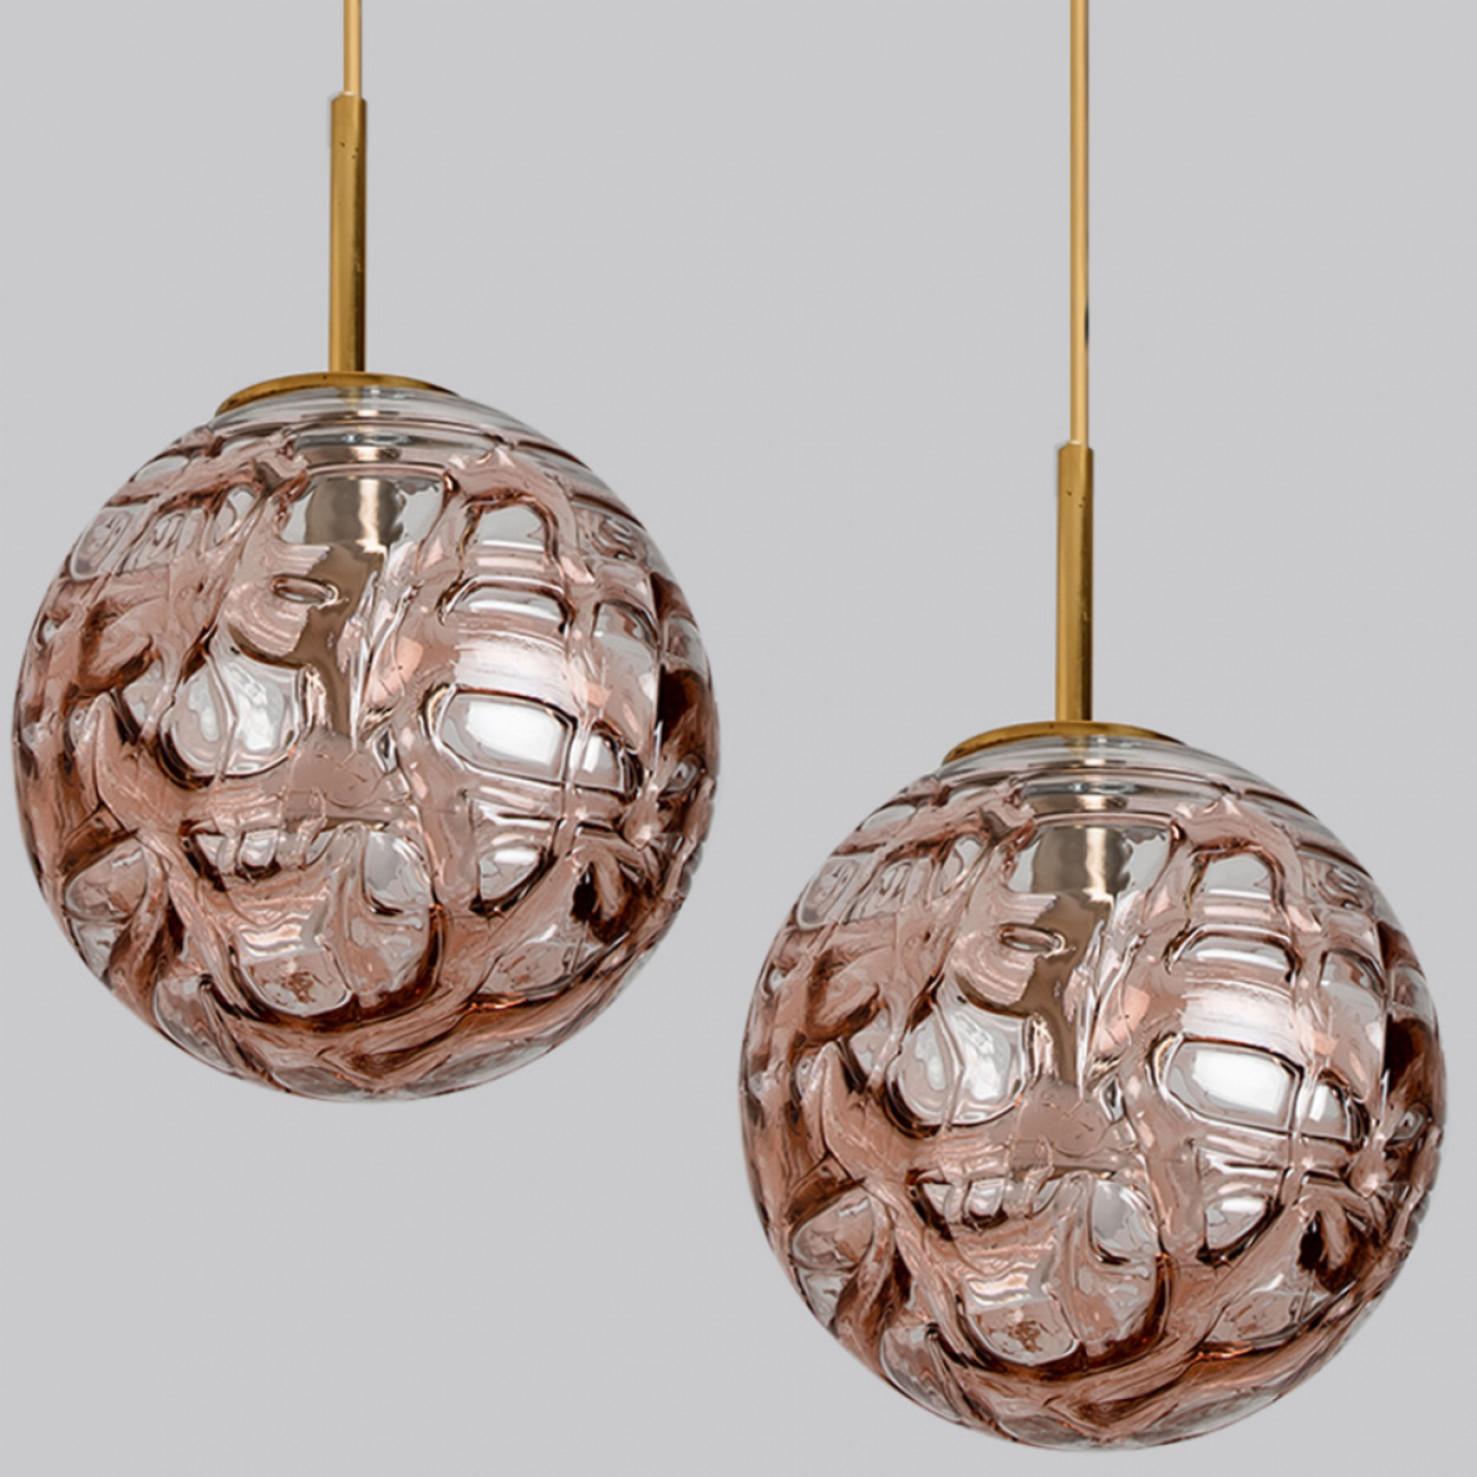 1 des 2 globes roses de CIRCA (en Collaboration avec Murano) dans le style de Venini, fabriqués, circa 1960.

Abat-jour haut de gamme en cristal de Murano épais, composé de verres overlay dans la couleur Rose, appliqués en tourbillons irréguliers.